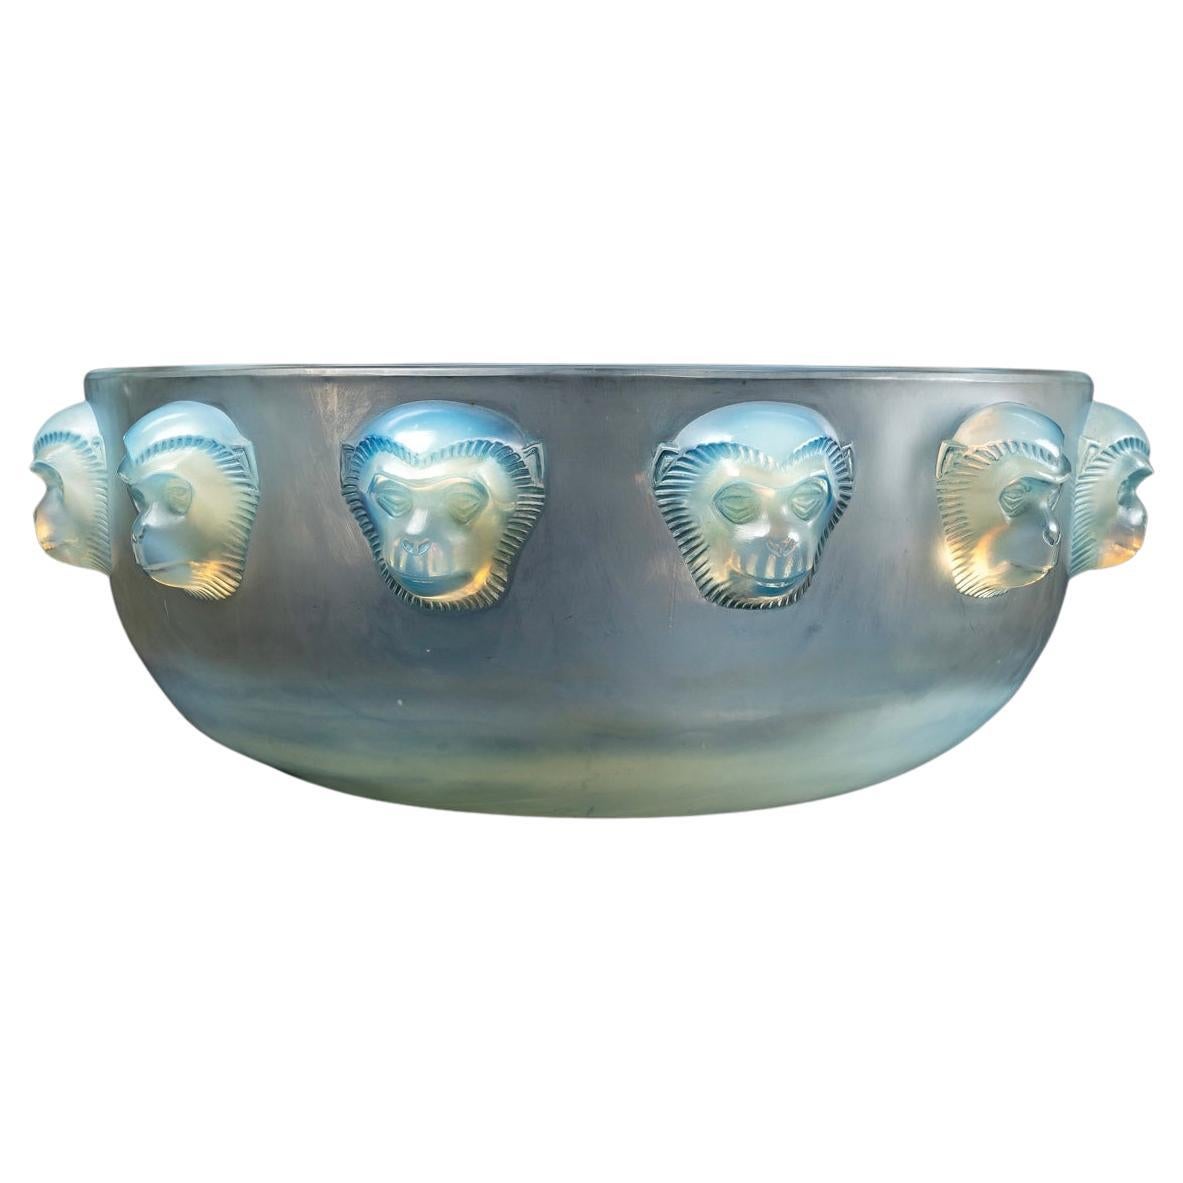 1928 René Lalique Madagascar Coupe Bowl Opalescent Glass, Monkeys